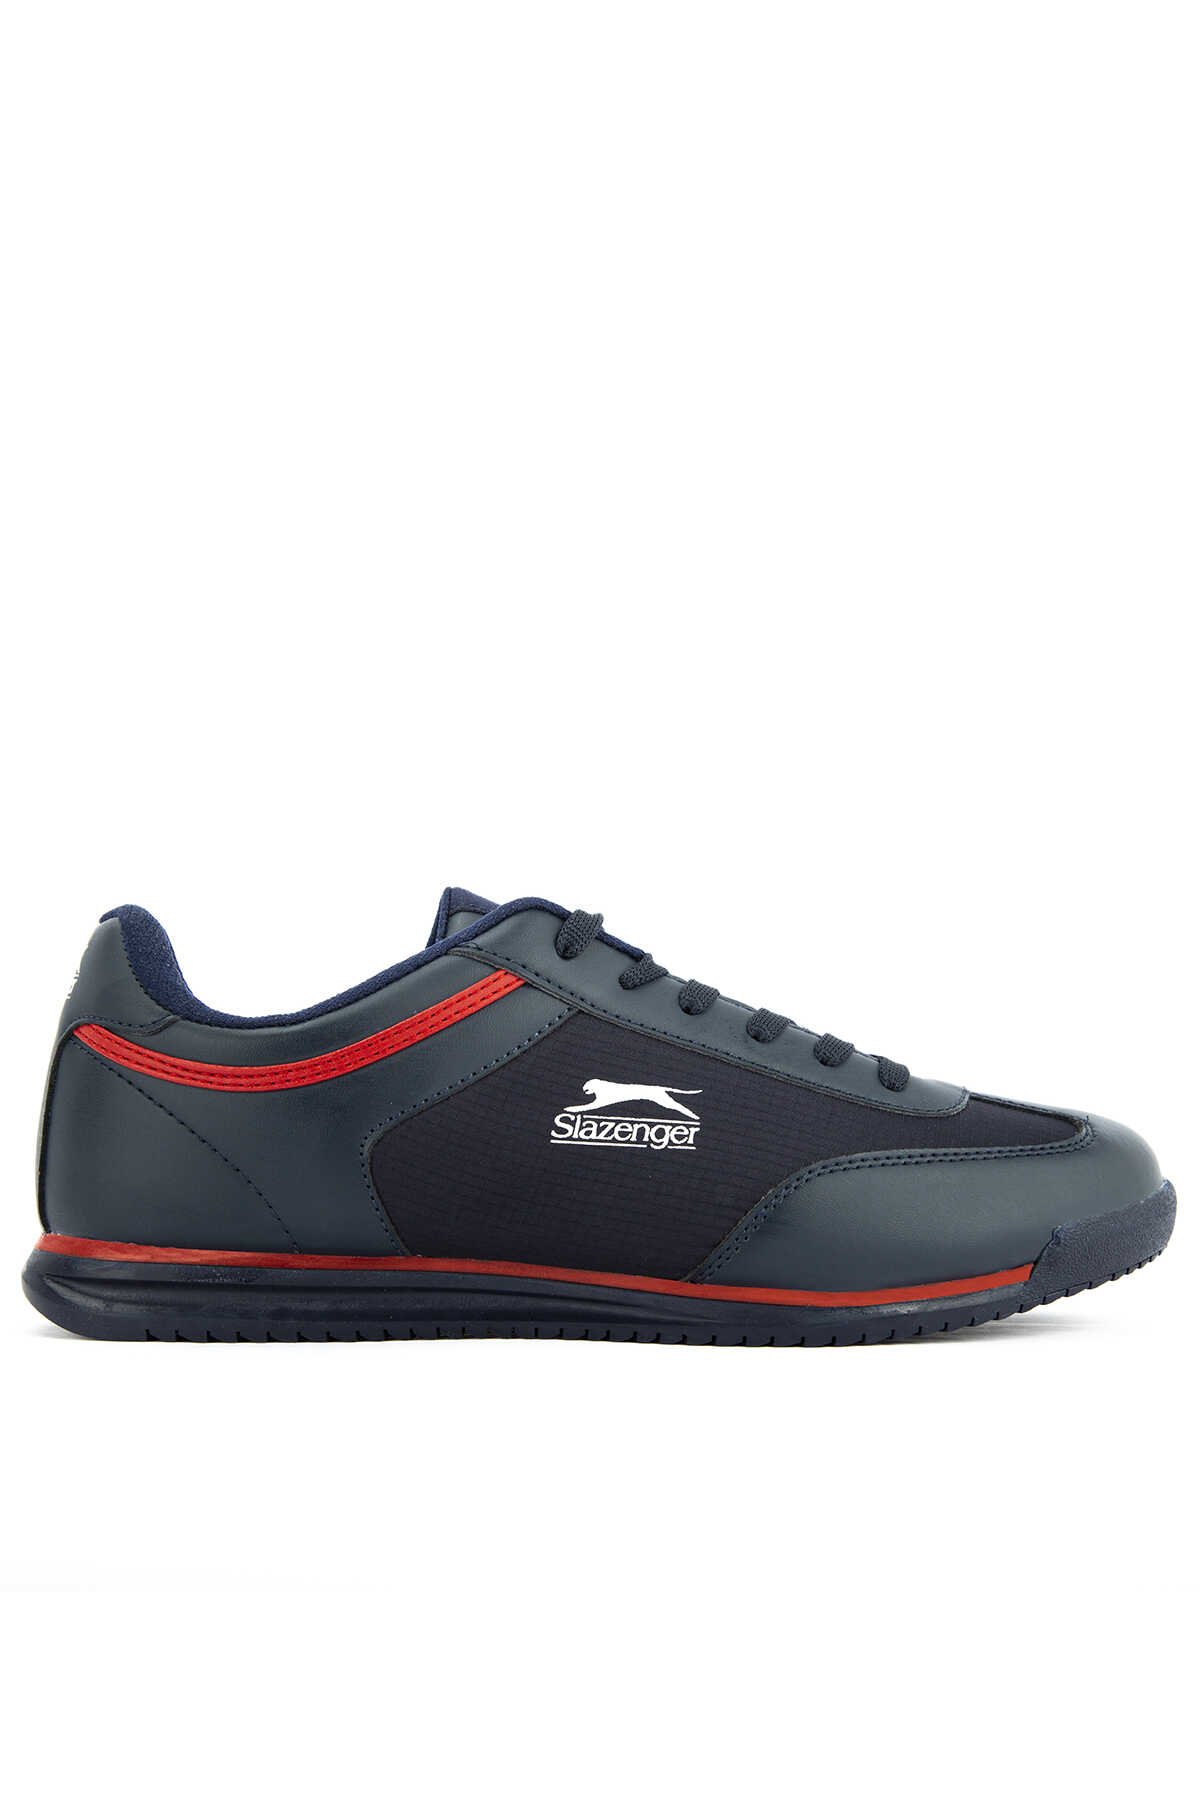 Slazenger - Slazenger MOJO I Sneaker Erkek Ayakkabı Lacivert / Kırmızı